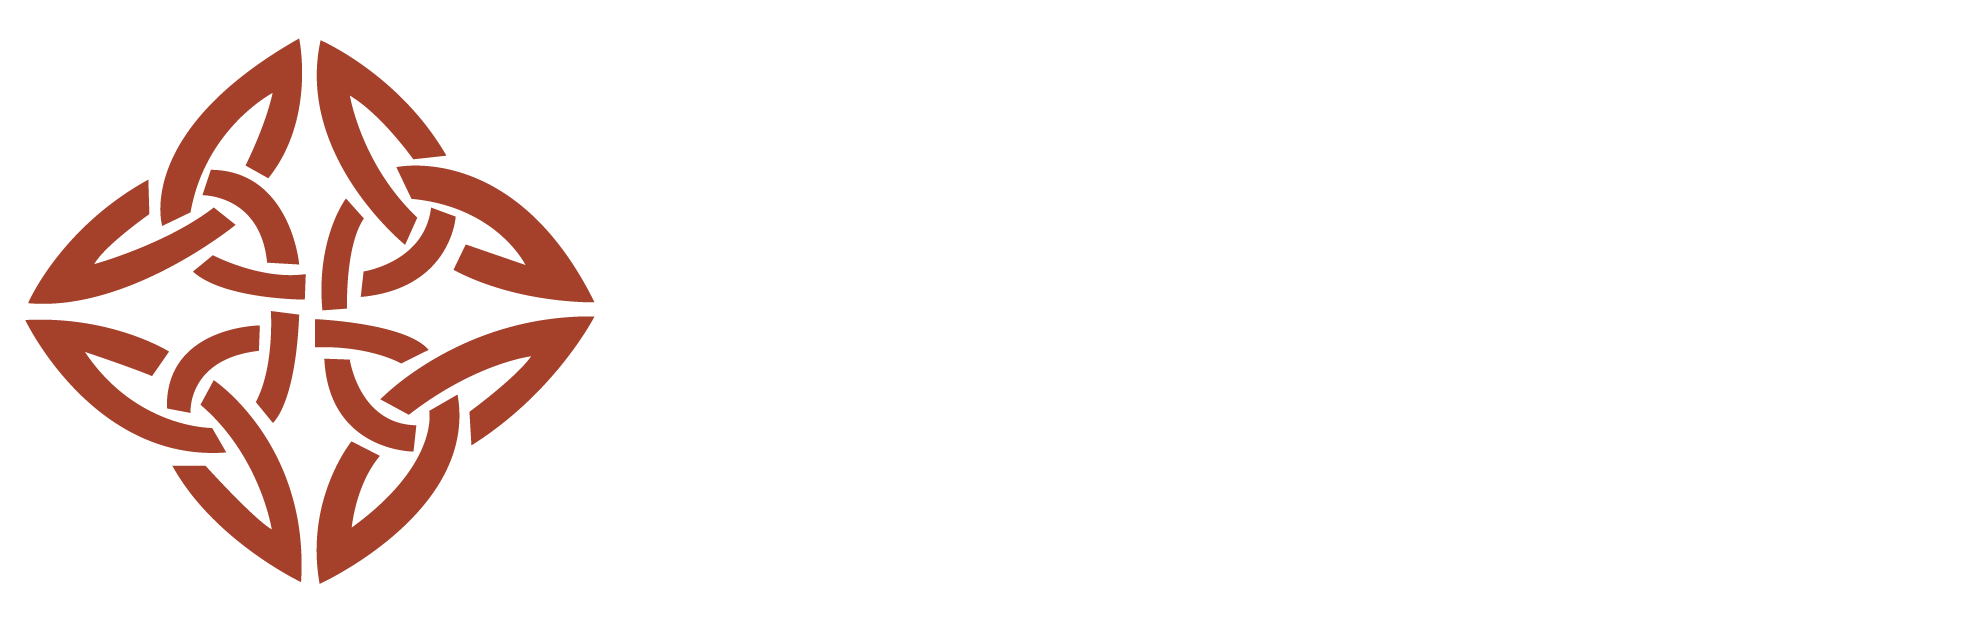 Hotel kasdar|Resort|Accomodation